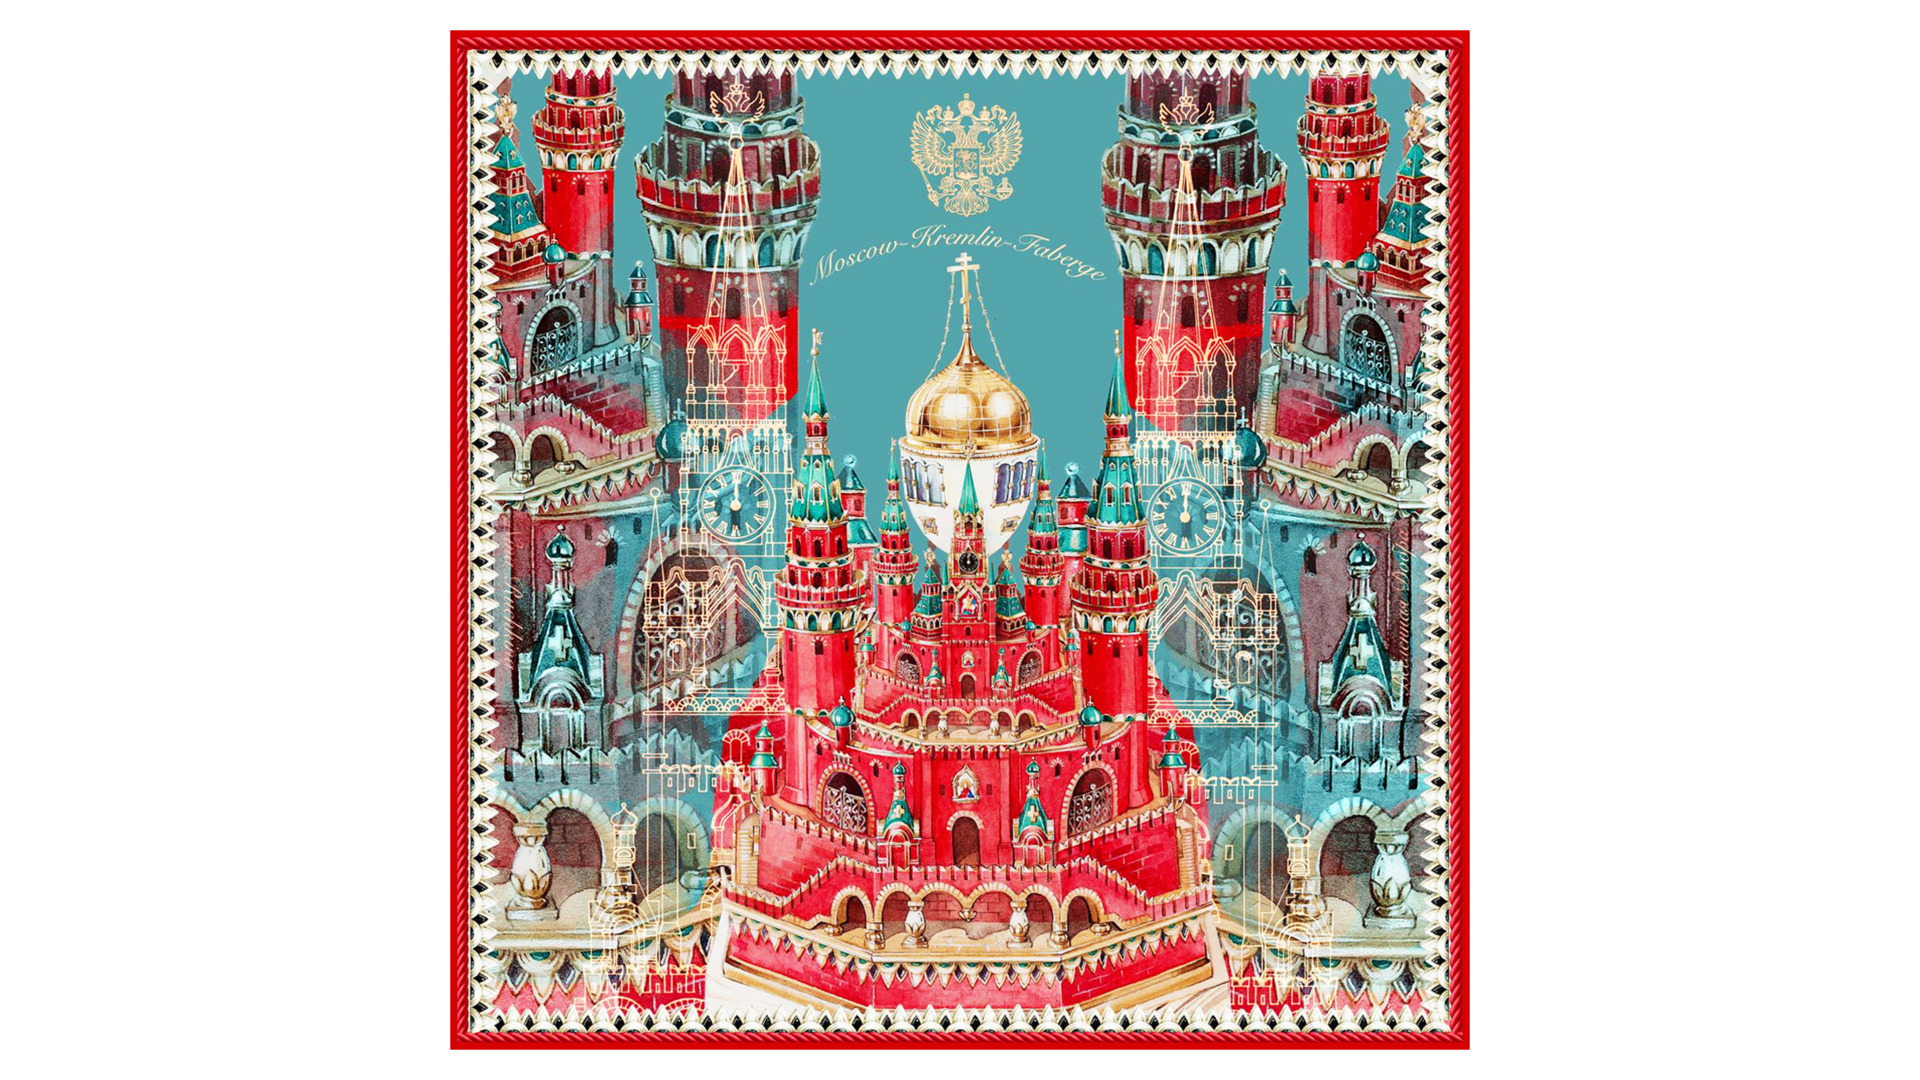 Платок сувенирный Русские в моде Москва Кремль Фаберже 90х90 см, шелк, вискоза, ручная подшивка